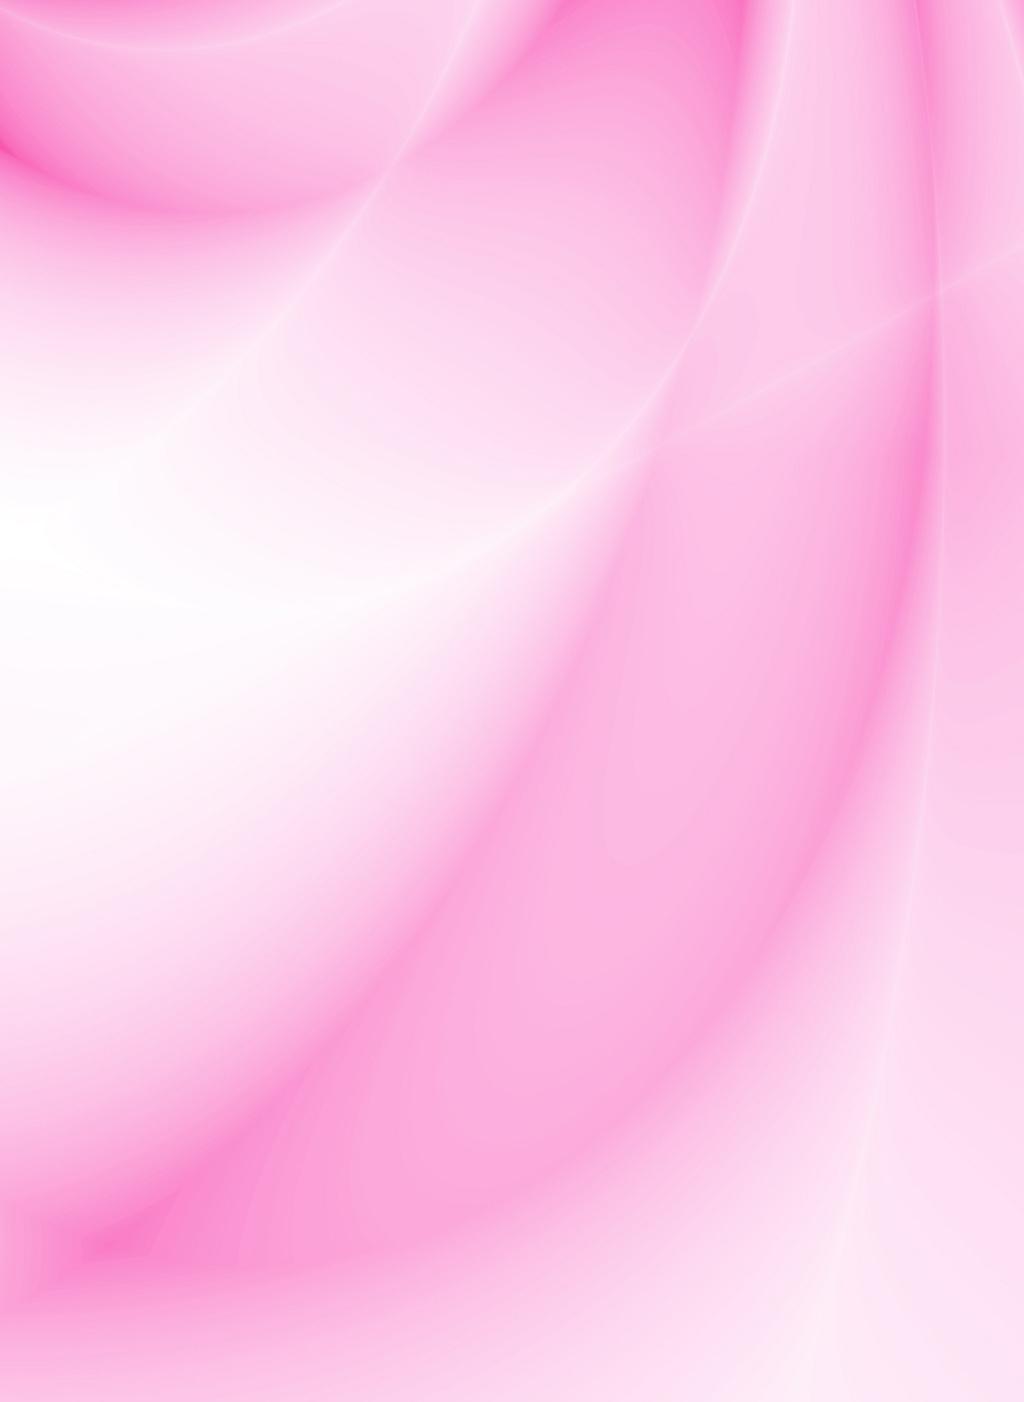 Hình ảnh về slide hồng đẹp